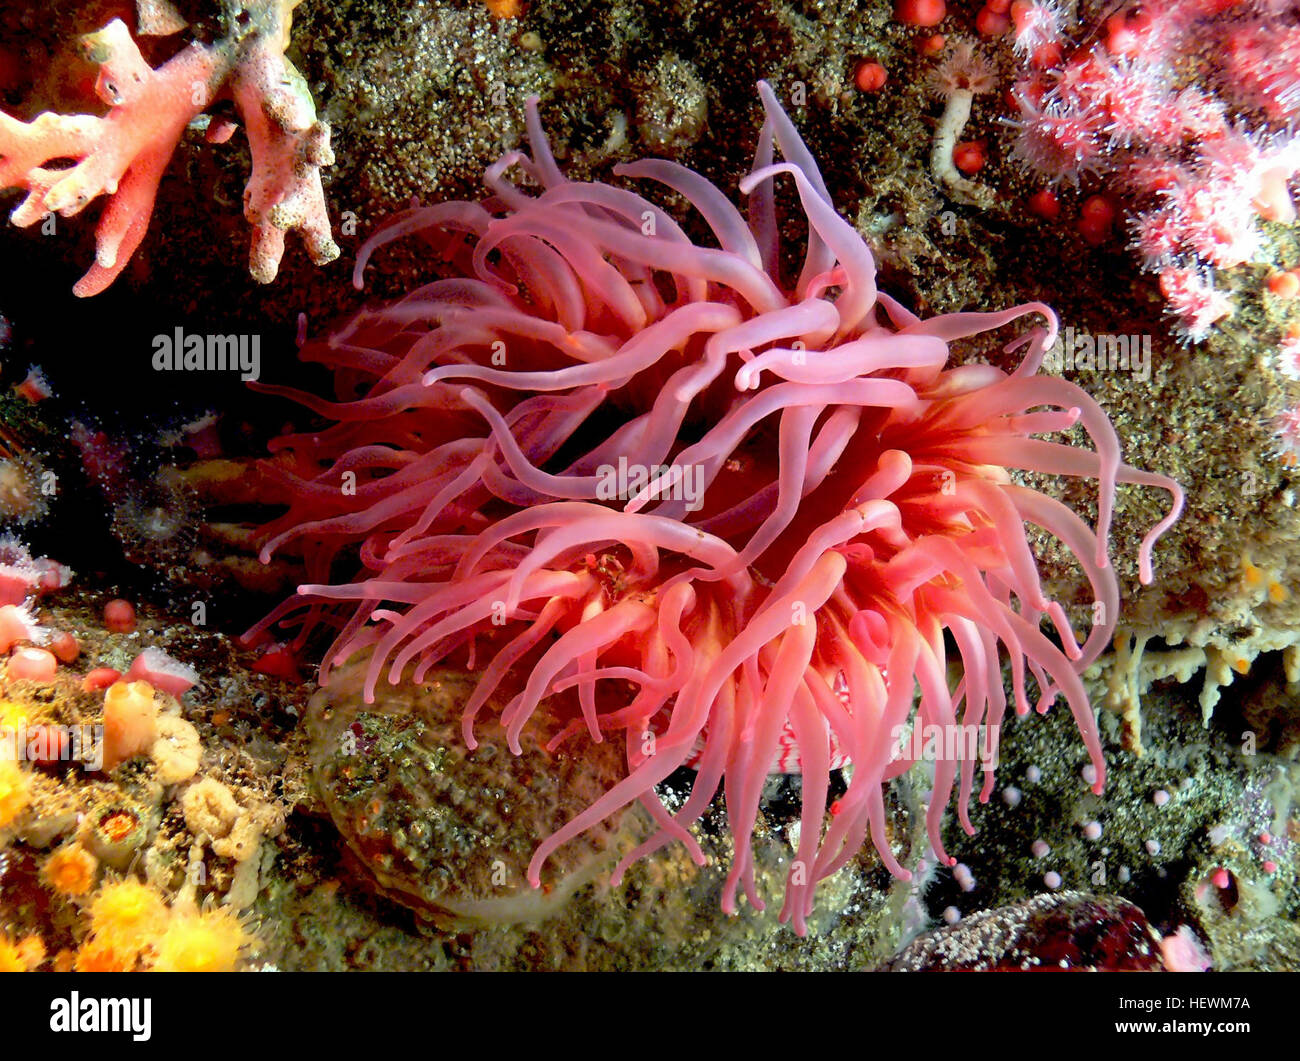 Seeanemonen sind eine Gruppe von Wasser-Wohnung, räuberische Tiere der Ordnung Actiniaria. Sie sind für die Anemone, eine terrestrische Blume benannt. Seeanemonen sind in den Phylum Cnidaria, Klasse Anthozoa, Unterklasse Hexacorallia klassifiziert. [1] Anthozoa haben oft große Polypen, die für die Verdauung der größere Beute zulassen und fehlt auch eine Medusa-Bühne. [2] als Nesseltieren beziehen sich die Seeanemonen, Korallen, Quallen, Rohr-Wohnung Anemonen und Hydra. Stockfoto